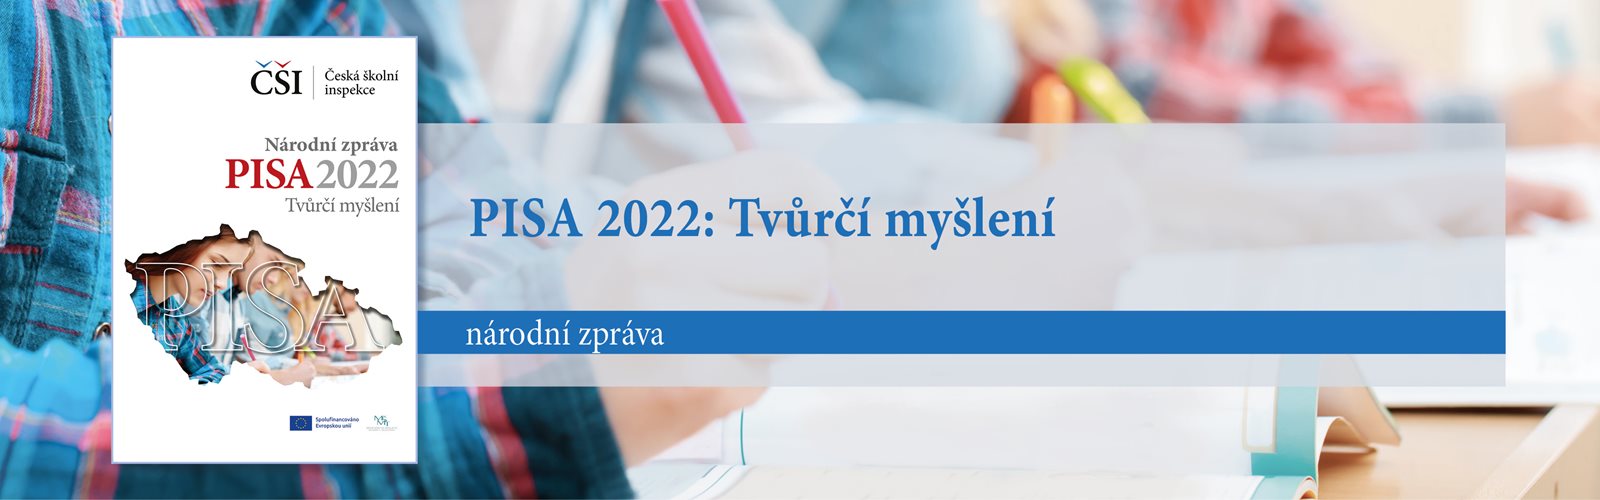 NZ PISA 2022 Tvůrčí myšlení